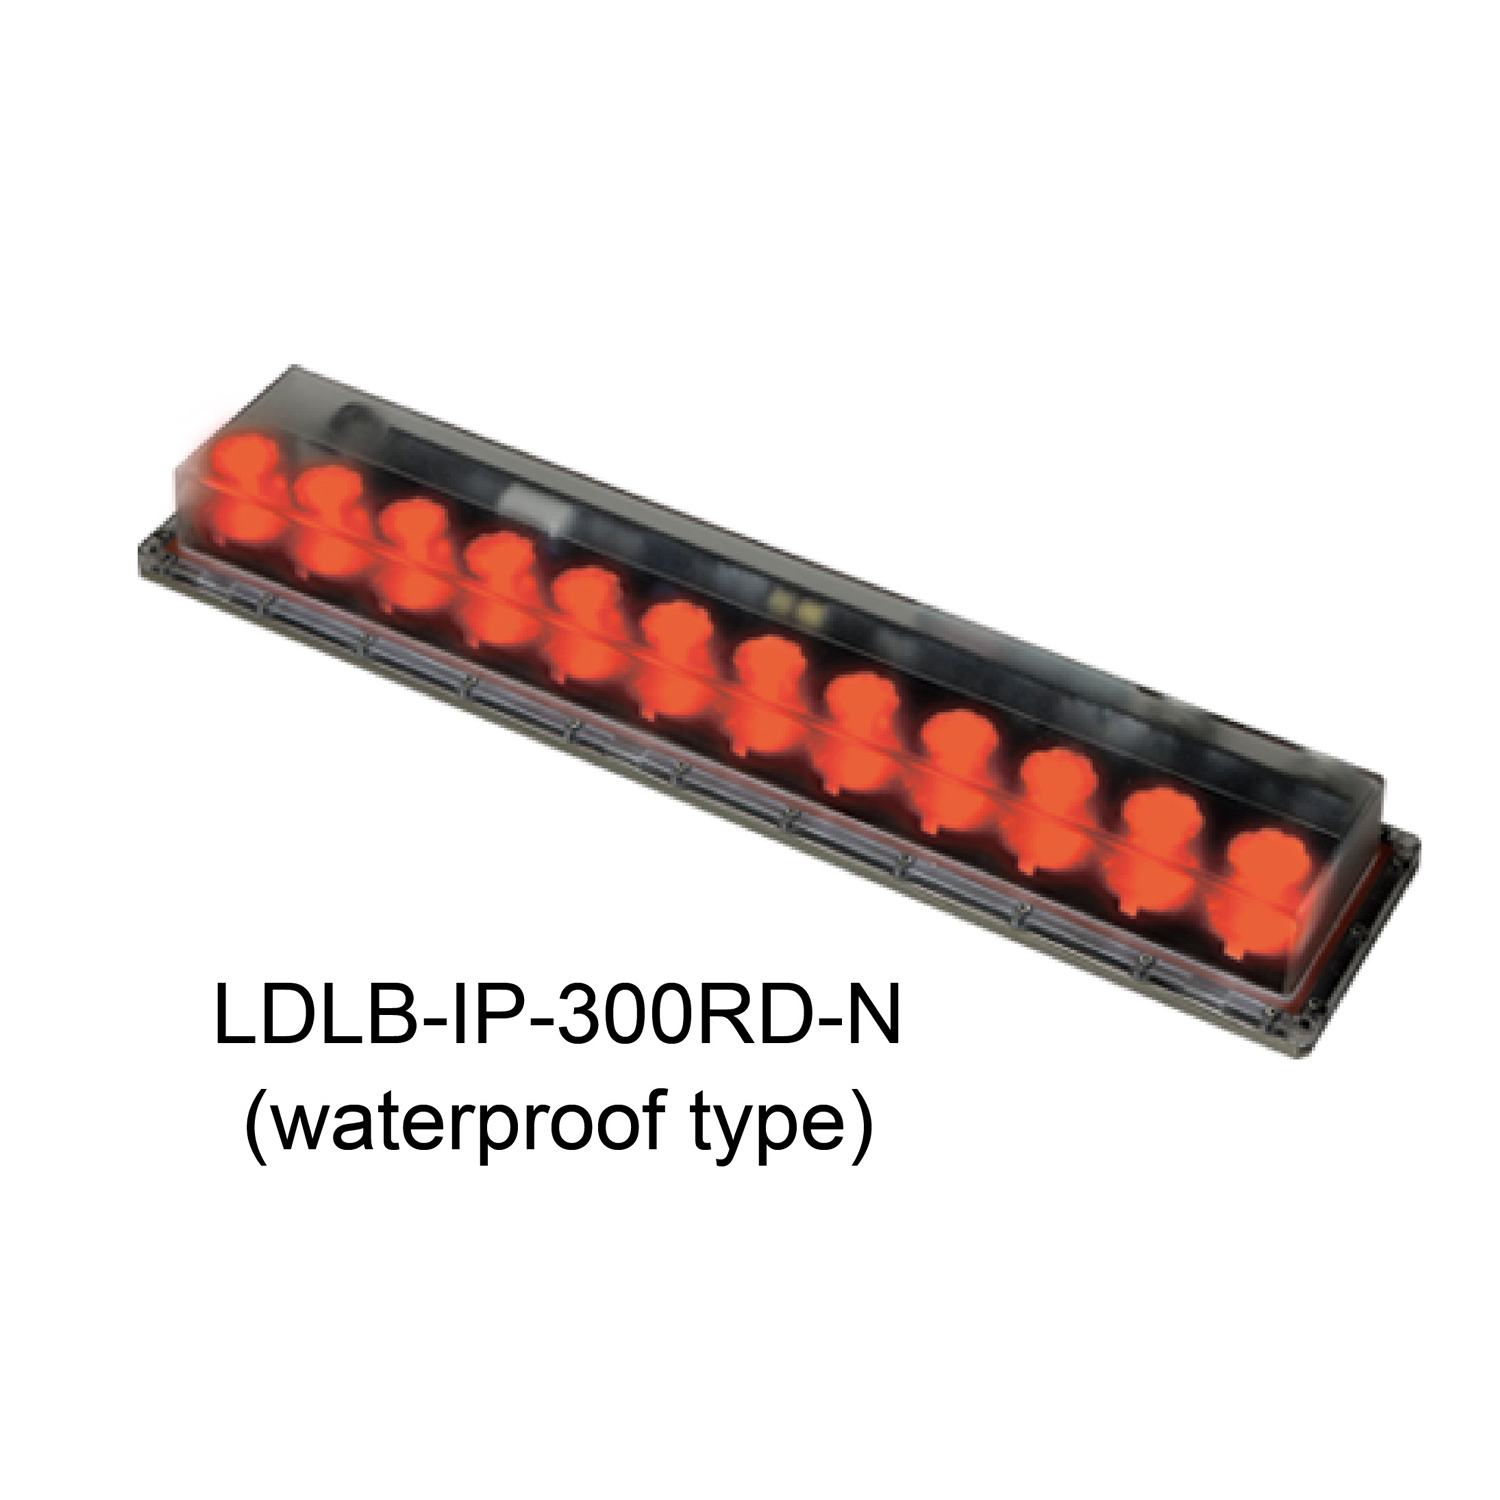 LDLB-IP-300RD-N